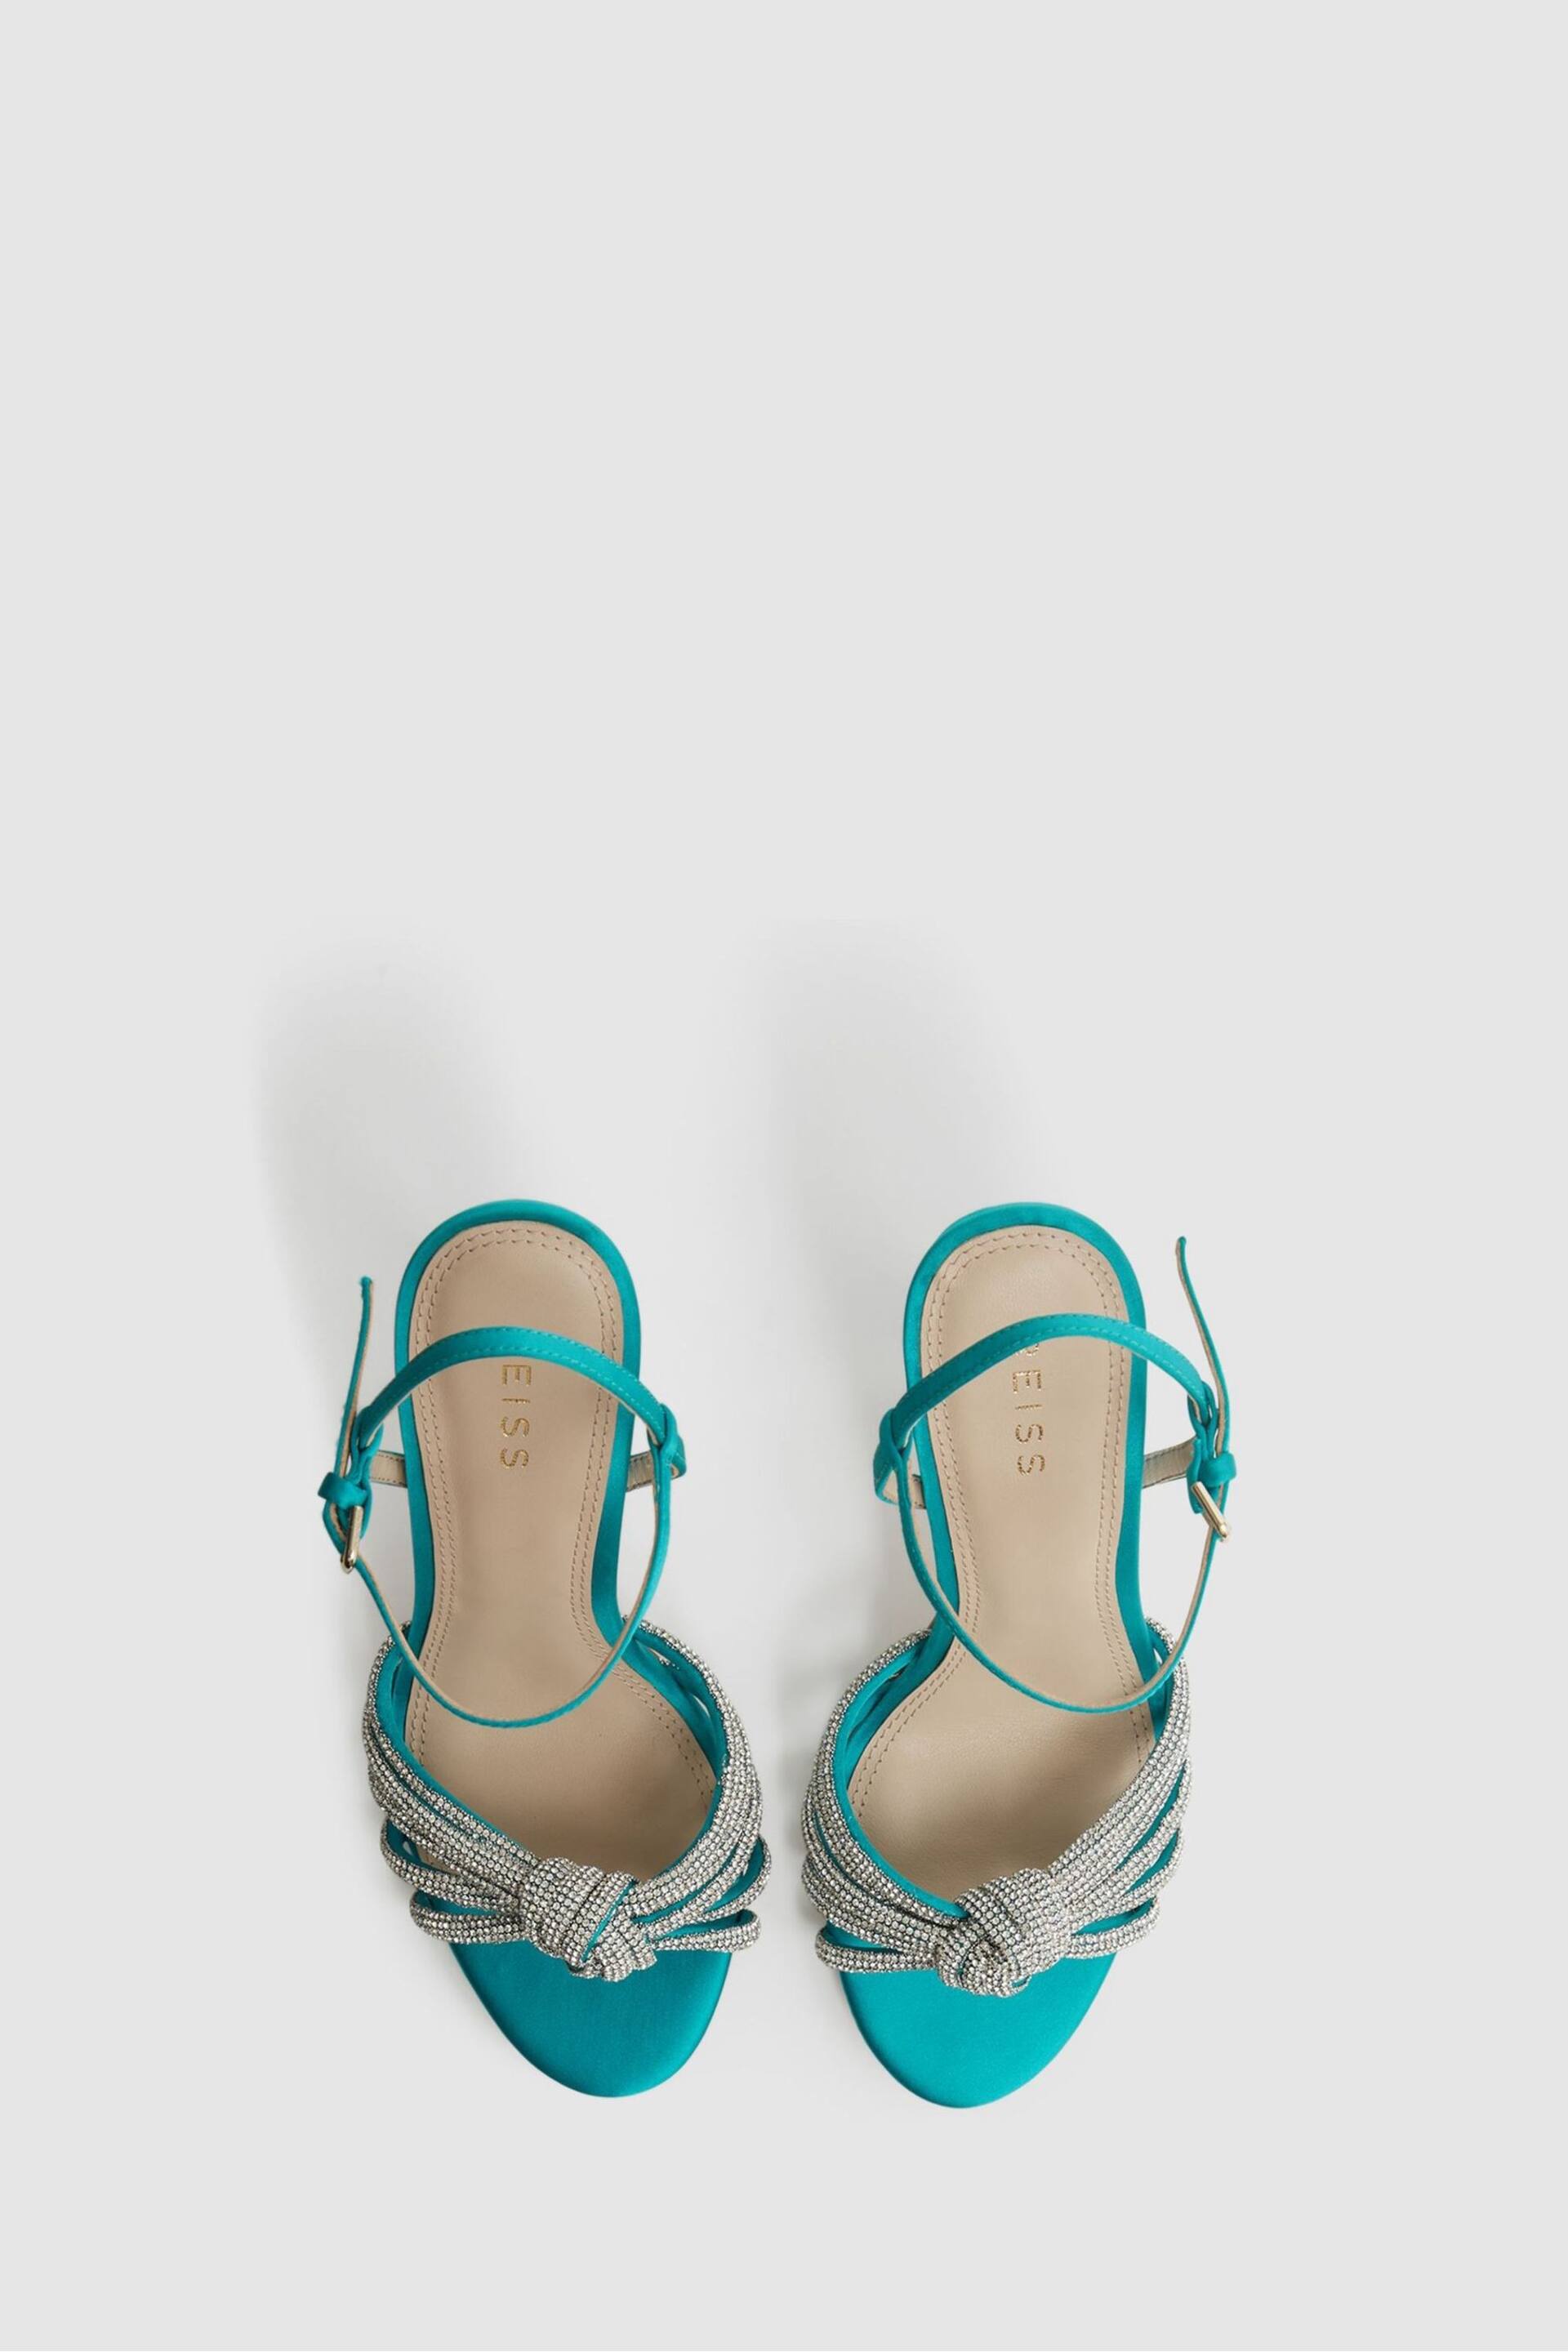 Reiss Blue Estel Embellished Heeled Sandals - Image 3 of 5